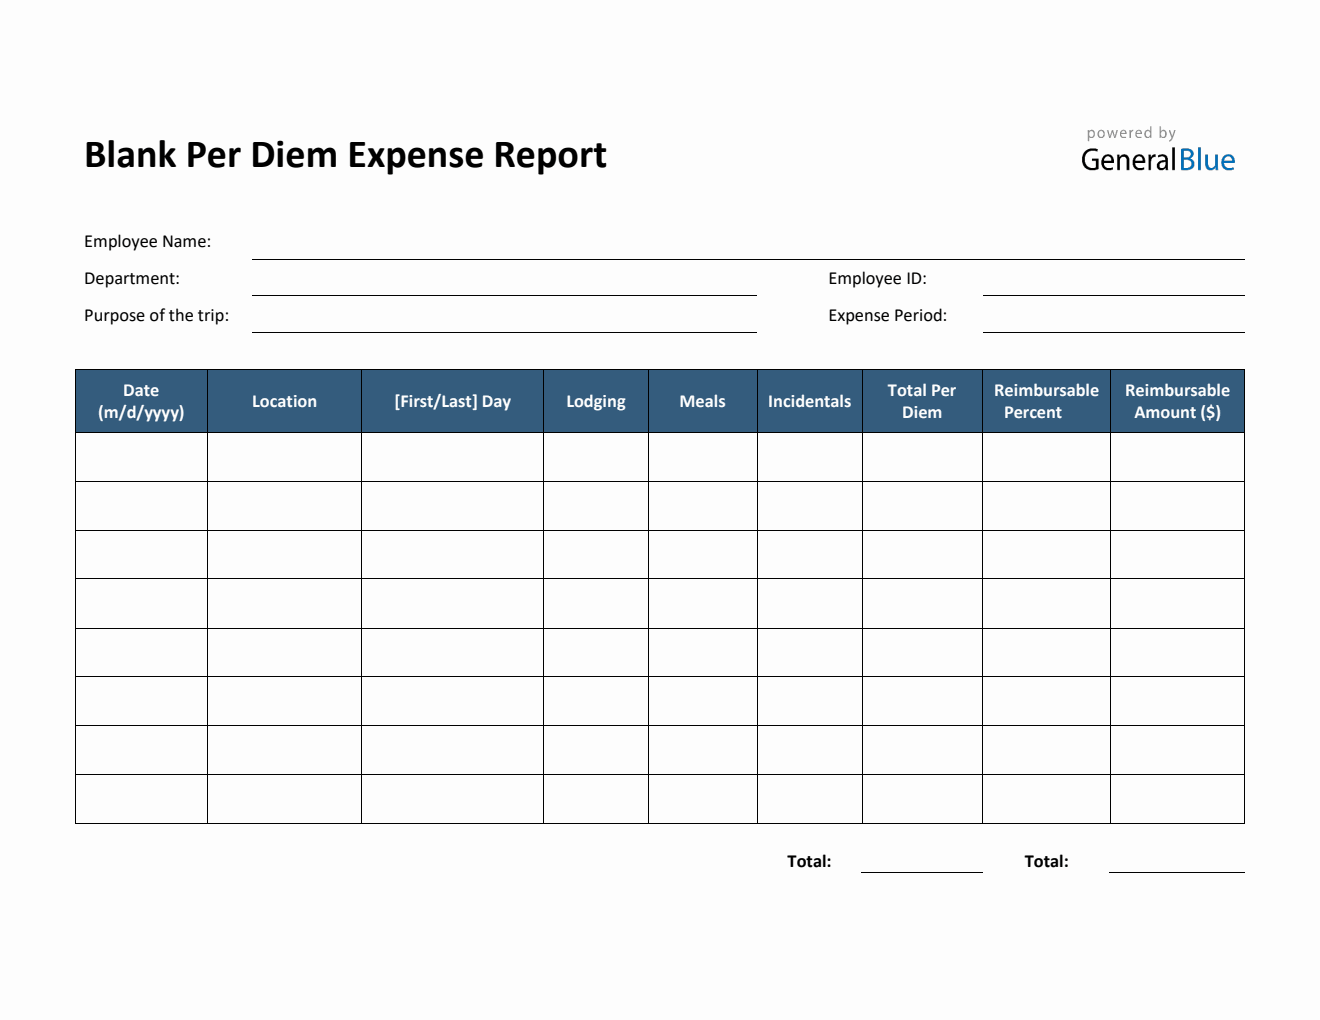 Blank Per Diem Expense Report Template in PDF (Simple)